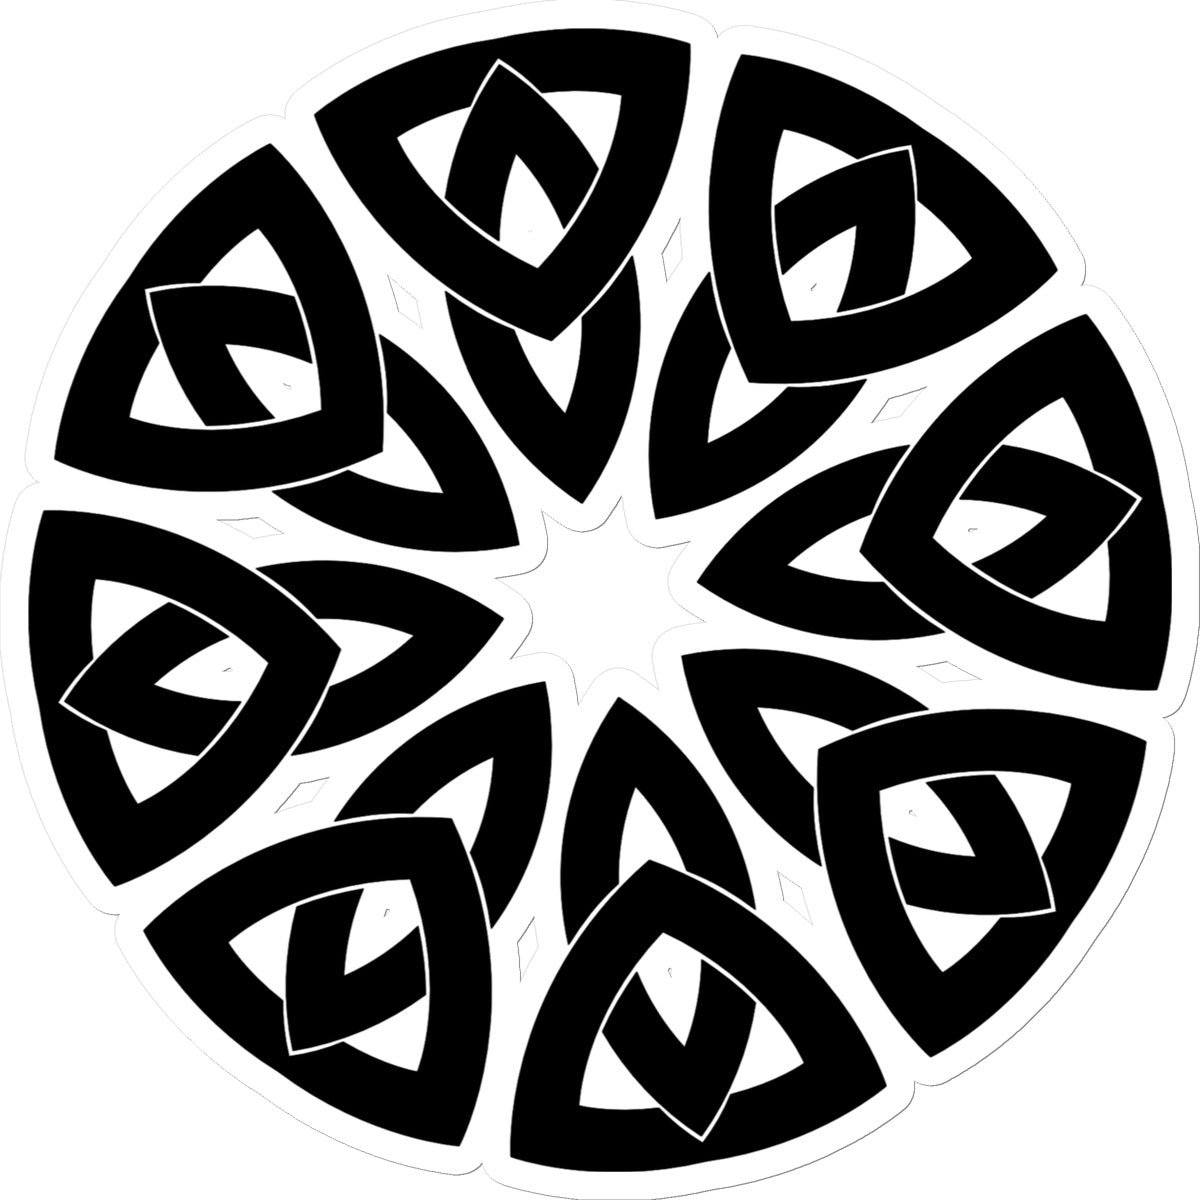 Celtic Petals Sticker